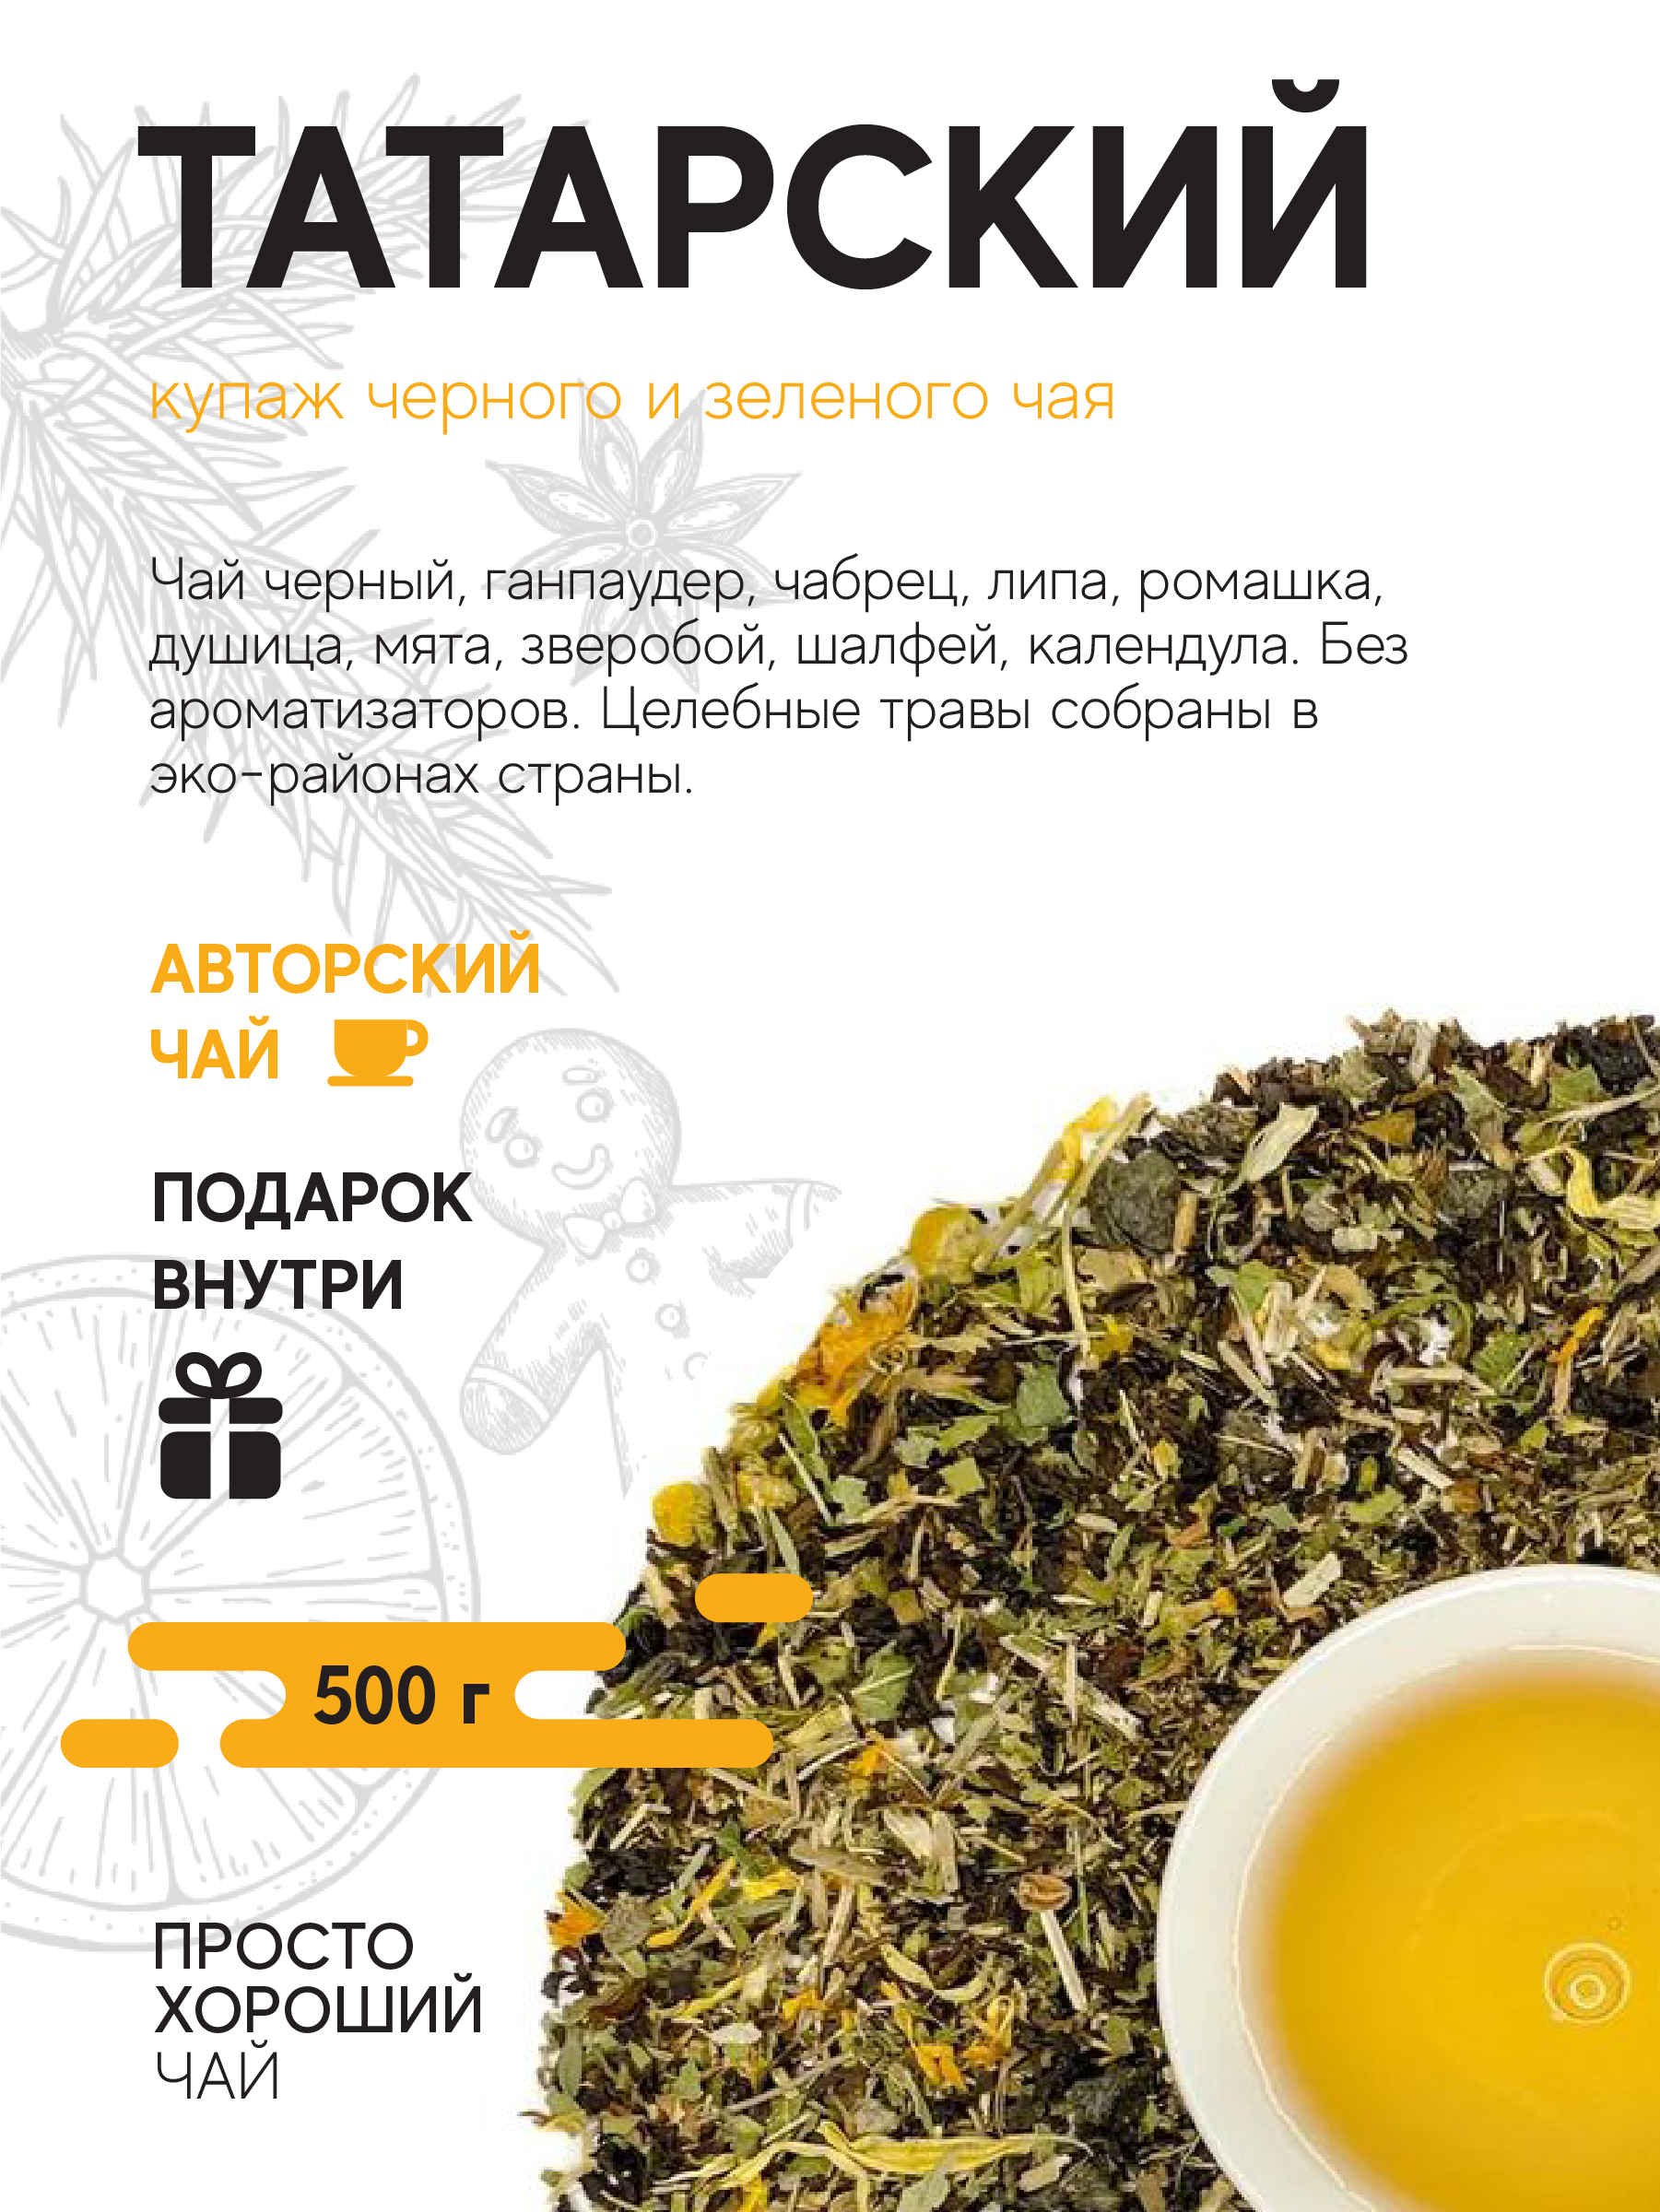 Купаж черного и зеленого чая с добавками Татарский , 500гр.